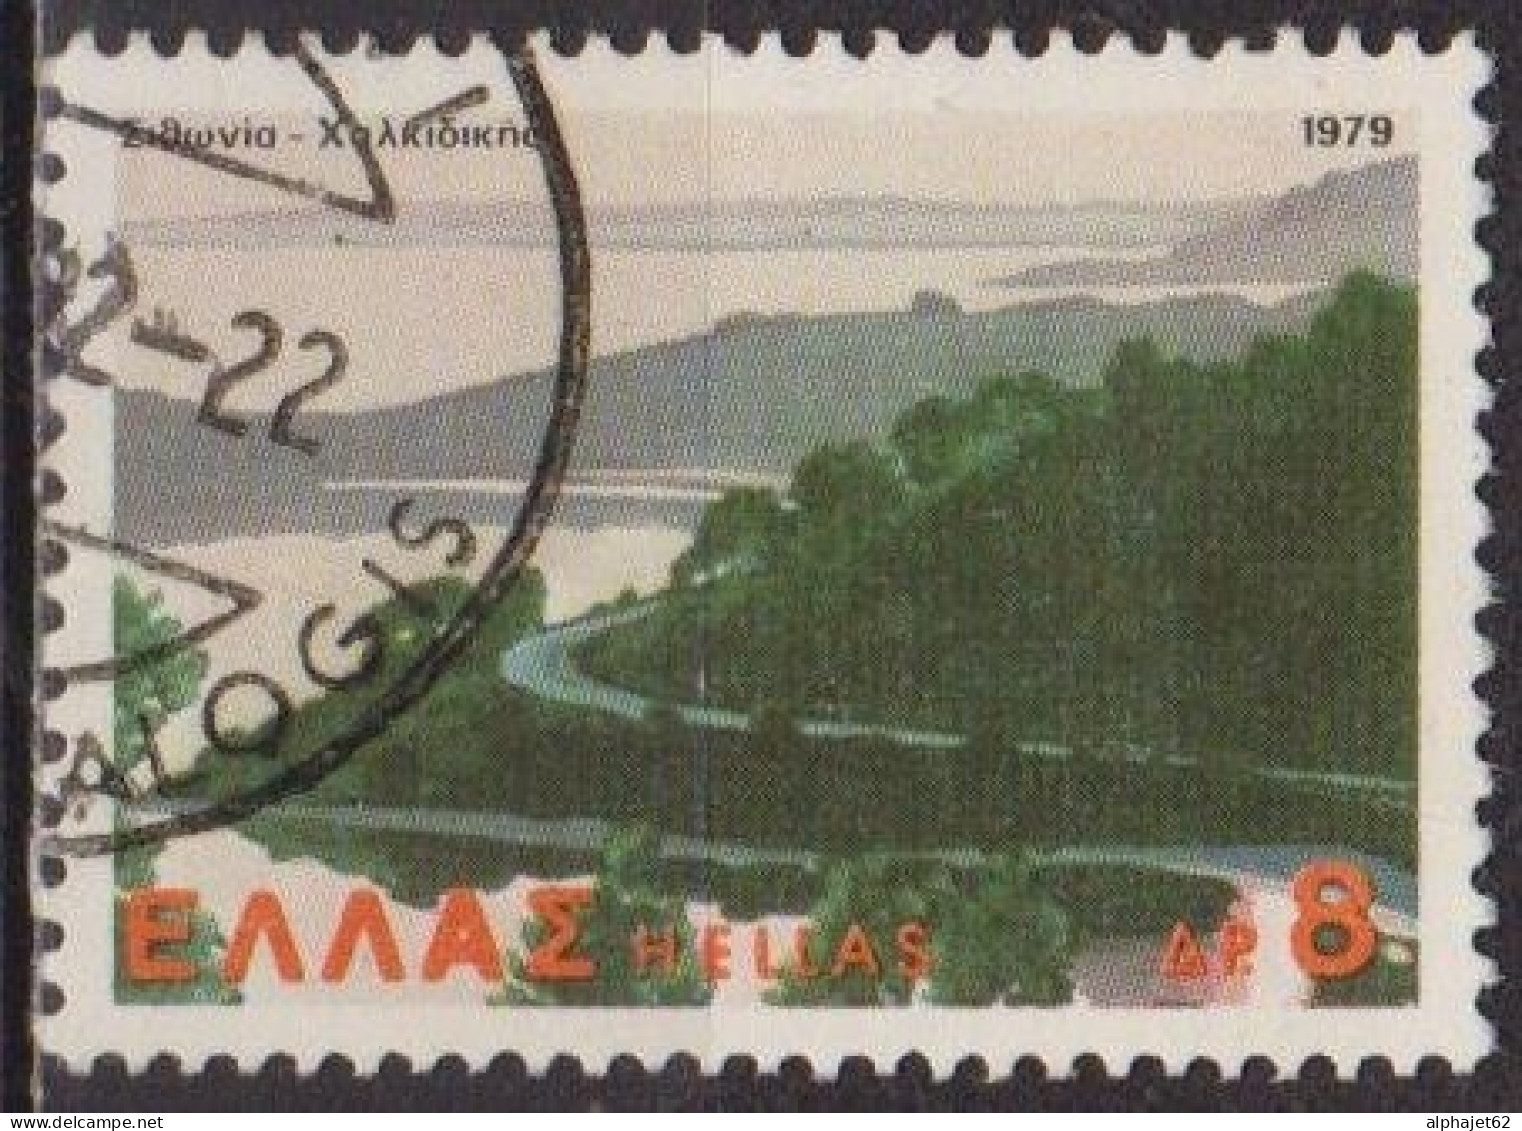 Tourisme - GRECE - Sitonia Chalcidique - N° 1372 - 1979 - Usados